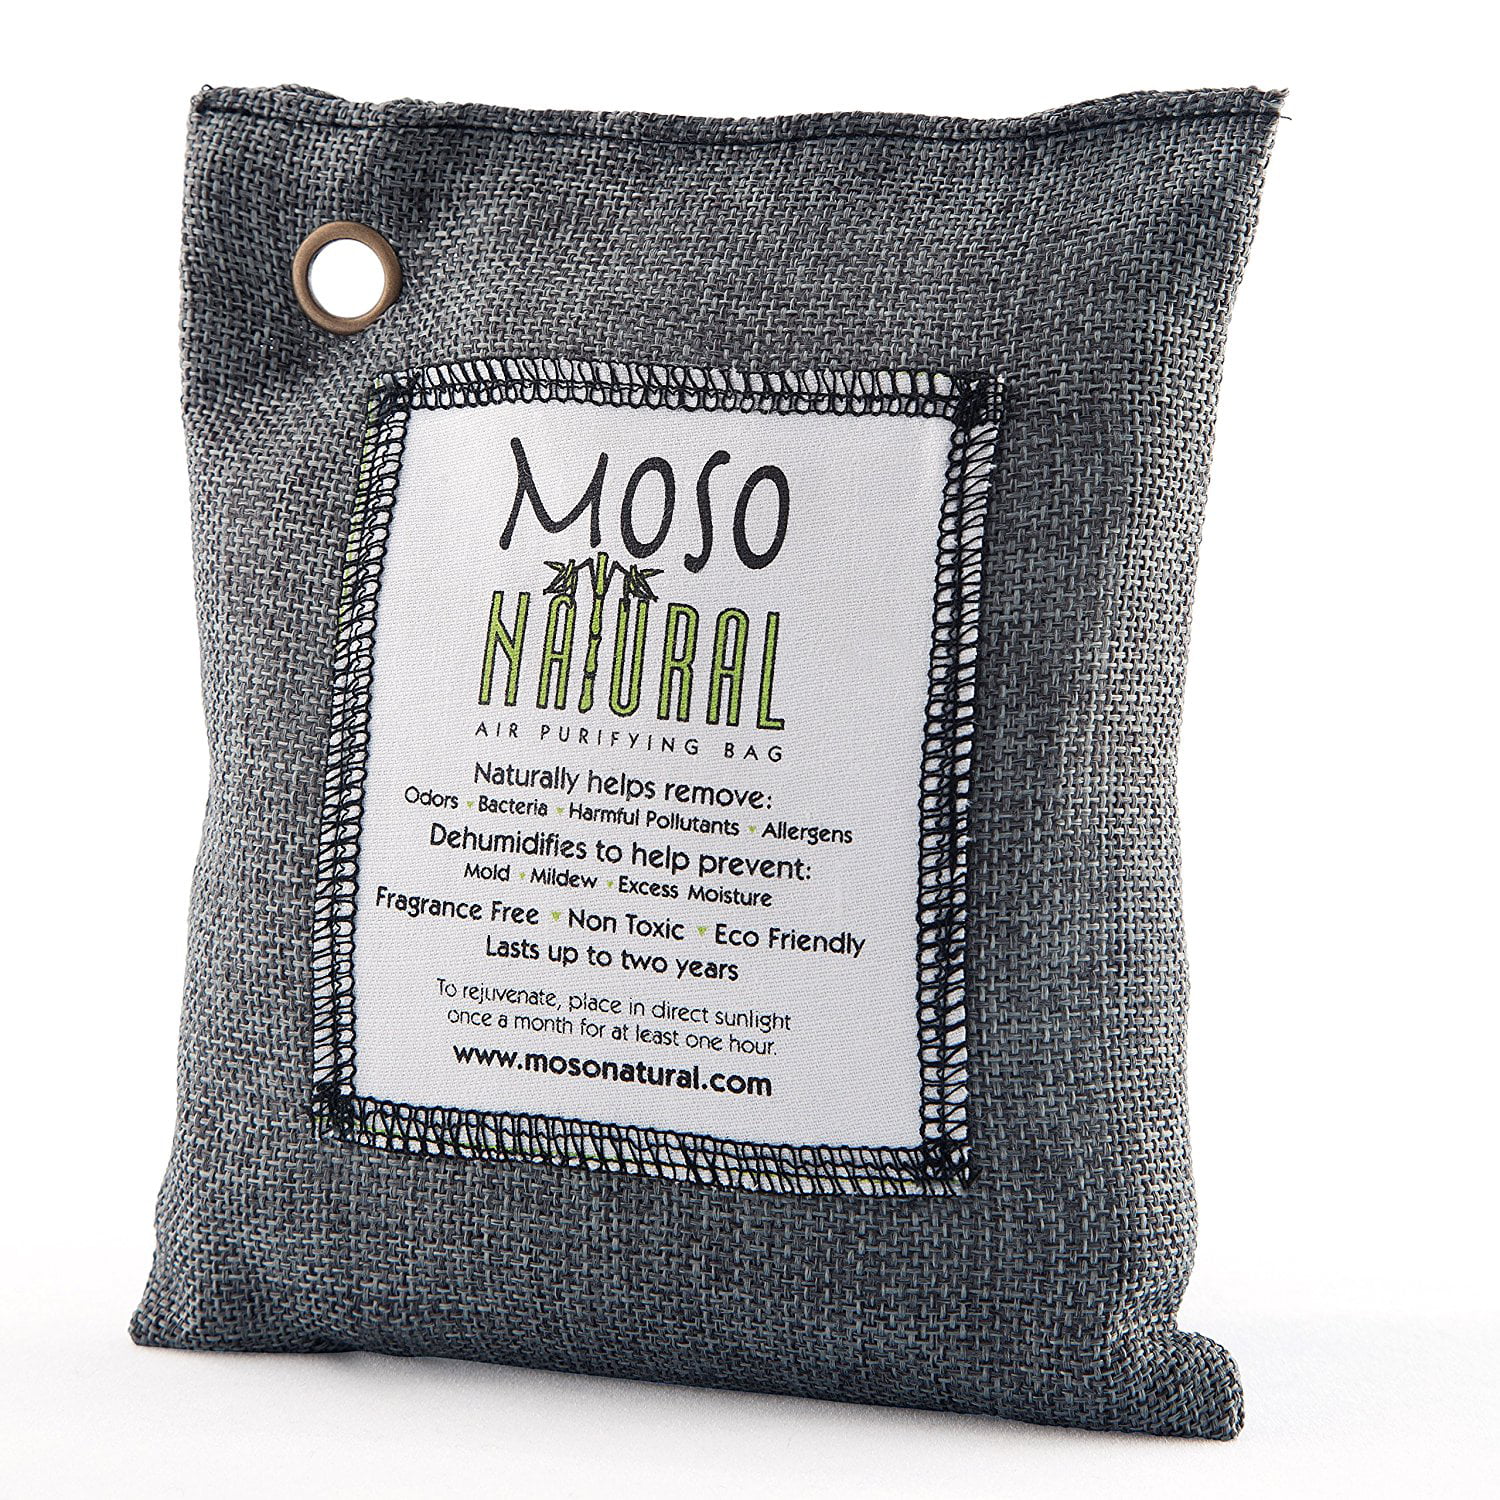 moso natural air purifying bag walmart